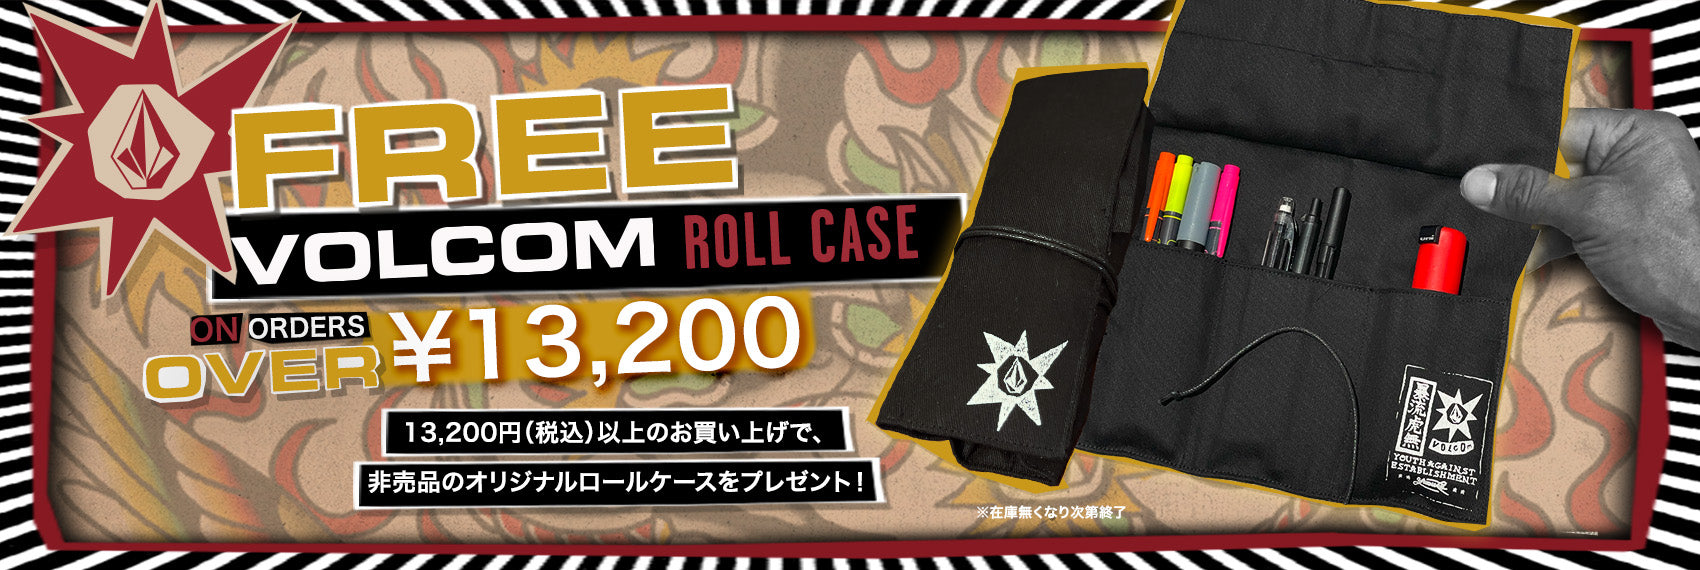 Roll Case